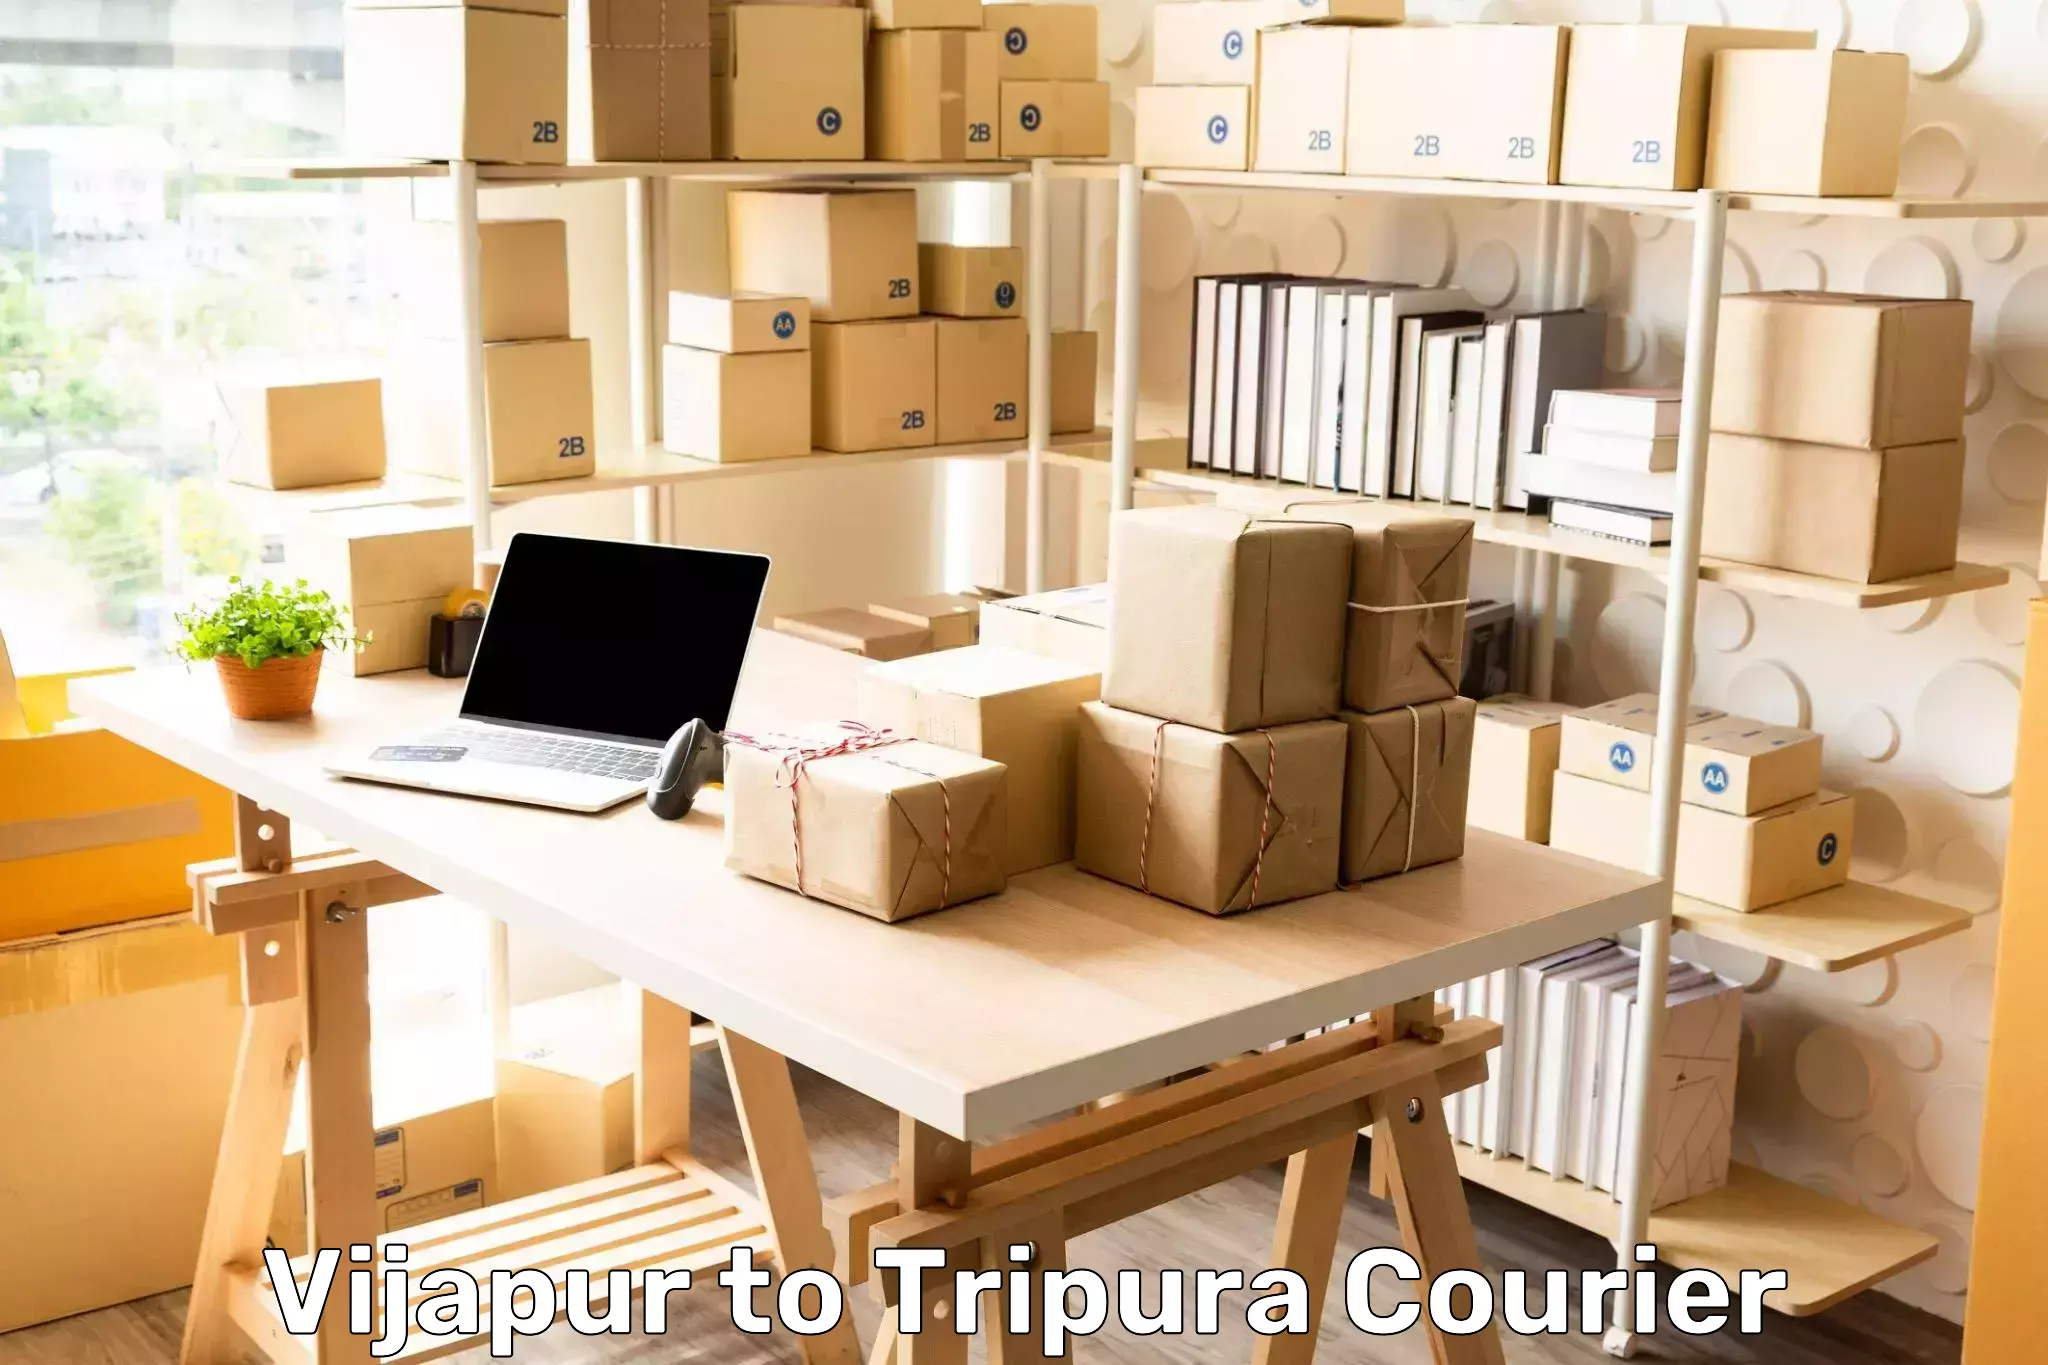 Local courier options Vijapur to South Tripura